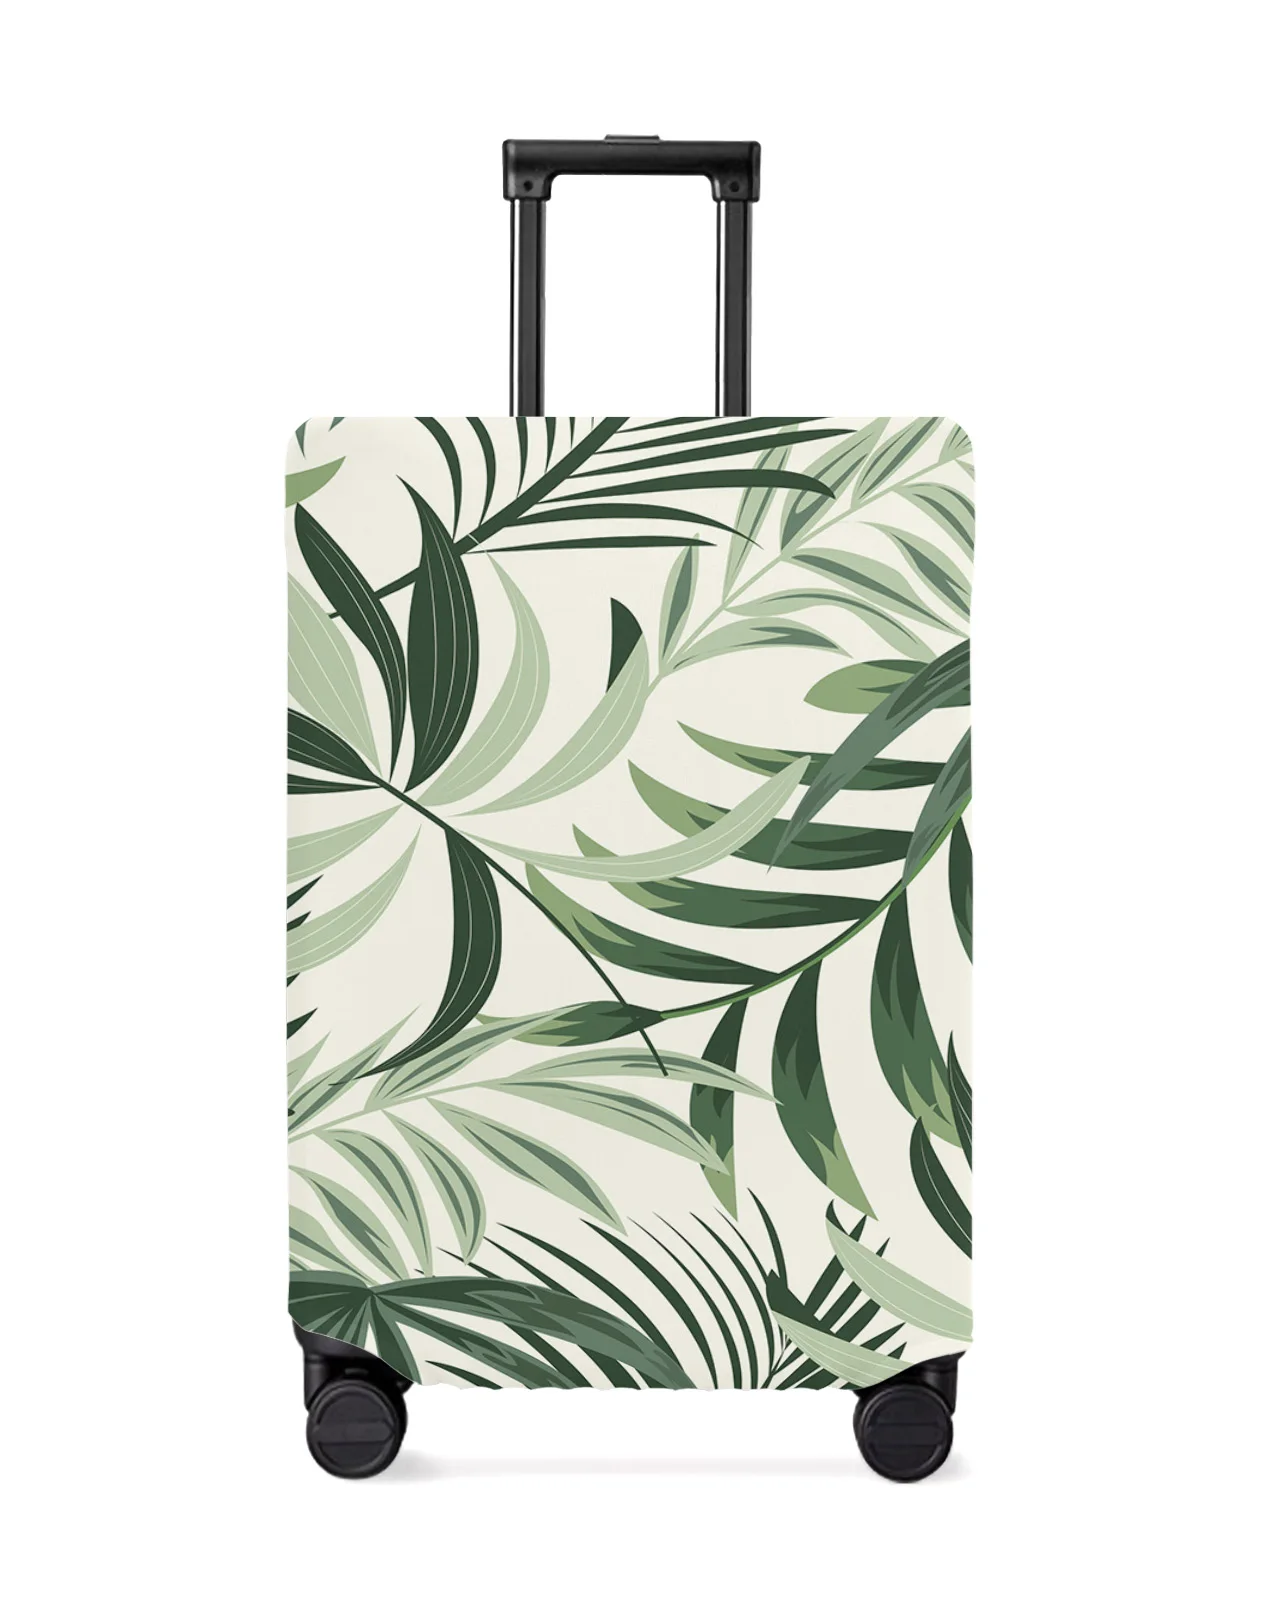 foglie-di-piante-tropicali-foglie-verdi-copertura-protettiva-per-bagagli-da-viaggio-accessori-da-viaggio-valigia-custodia-antipolvere-elastica-custodia-protettiva